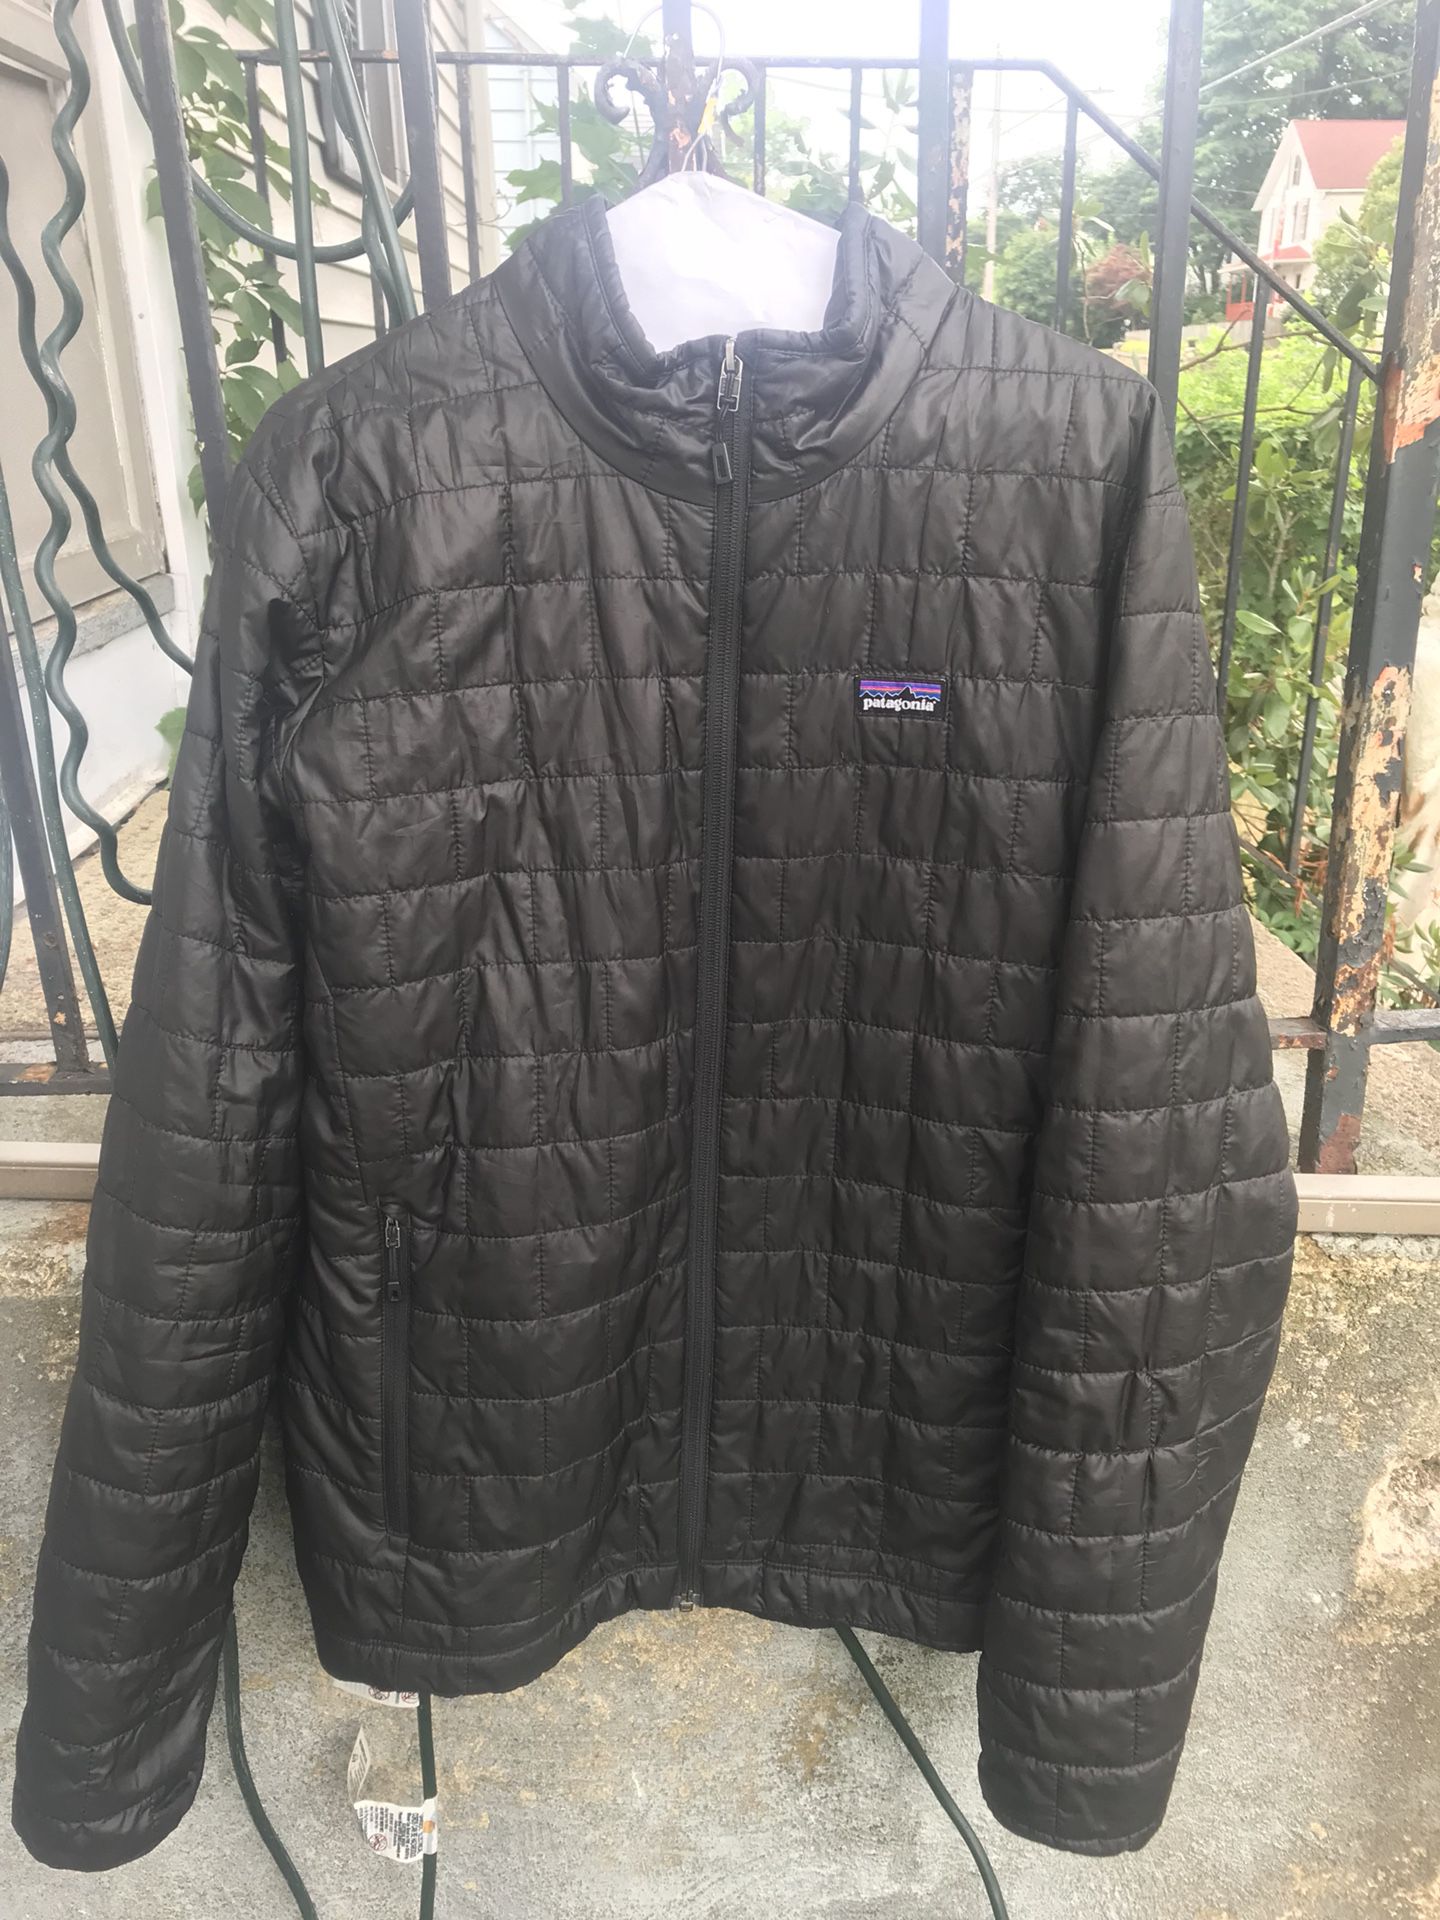 Patagonia Nano puff black zipup jacket men’s size M